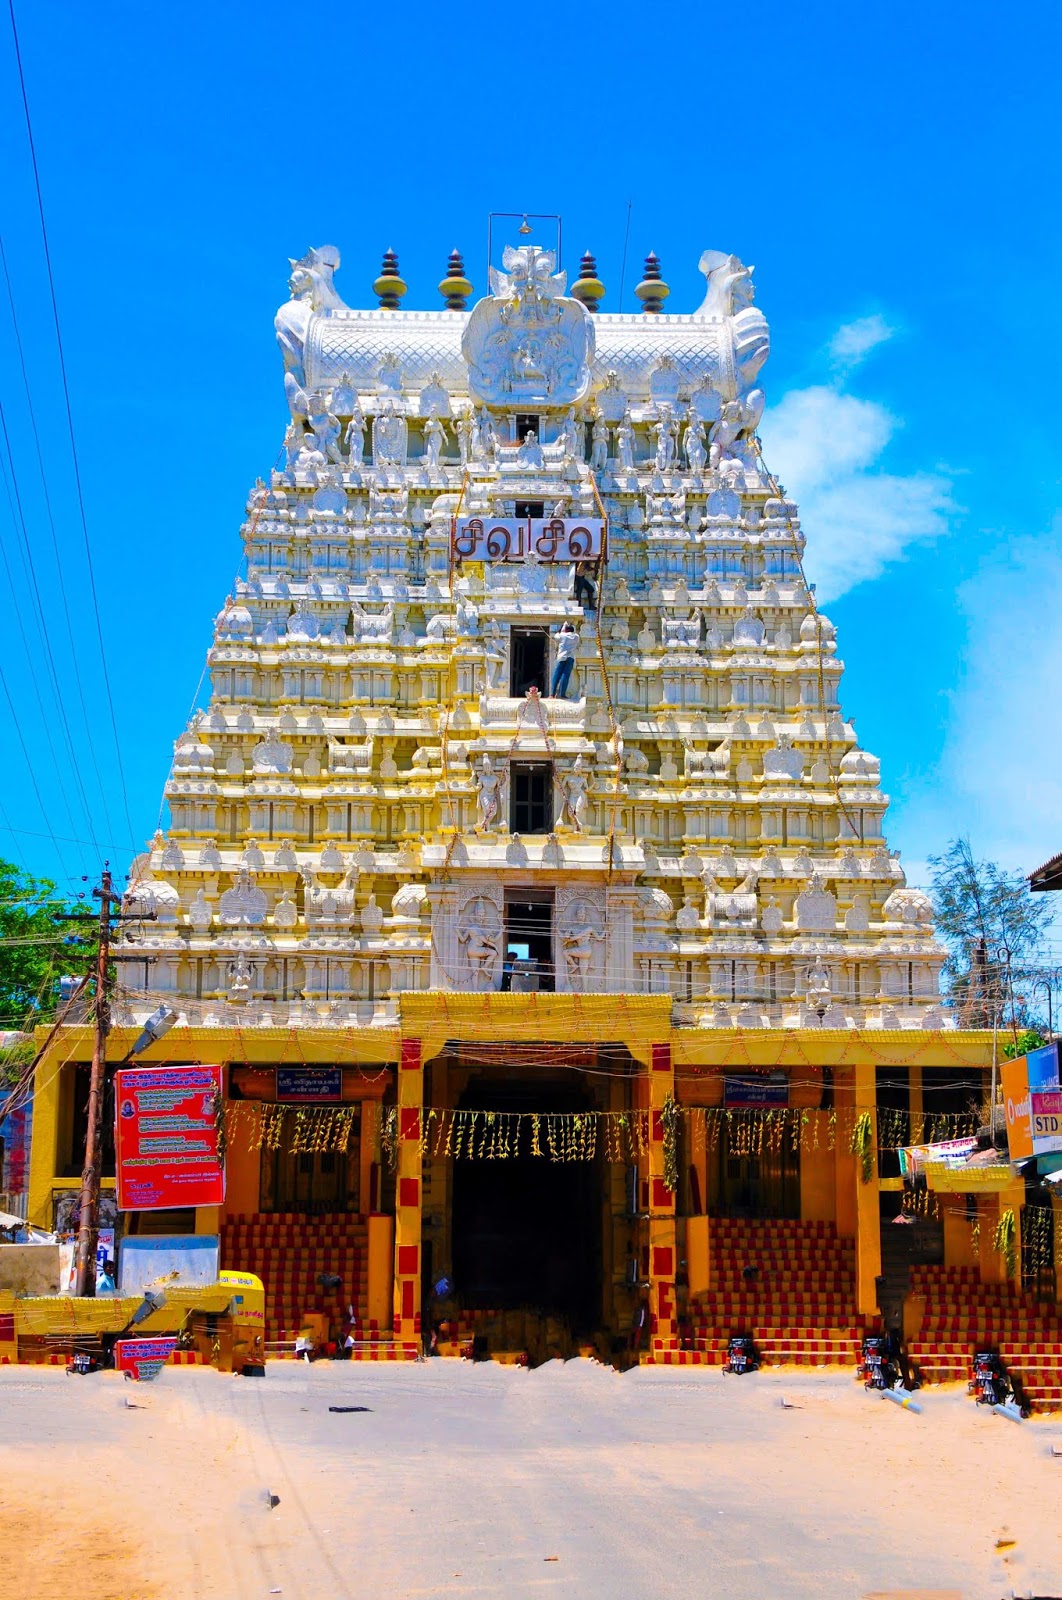 రామేశ్వరం శ్రీ రామనాథస్వామి ఆలయం తమిళనాడు పూర్తి వివరాలు  Rameshwaram Sri  Ramanathaswamy Temple Tamil Nadu Full details